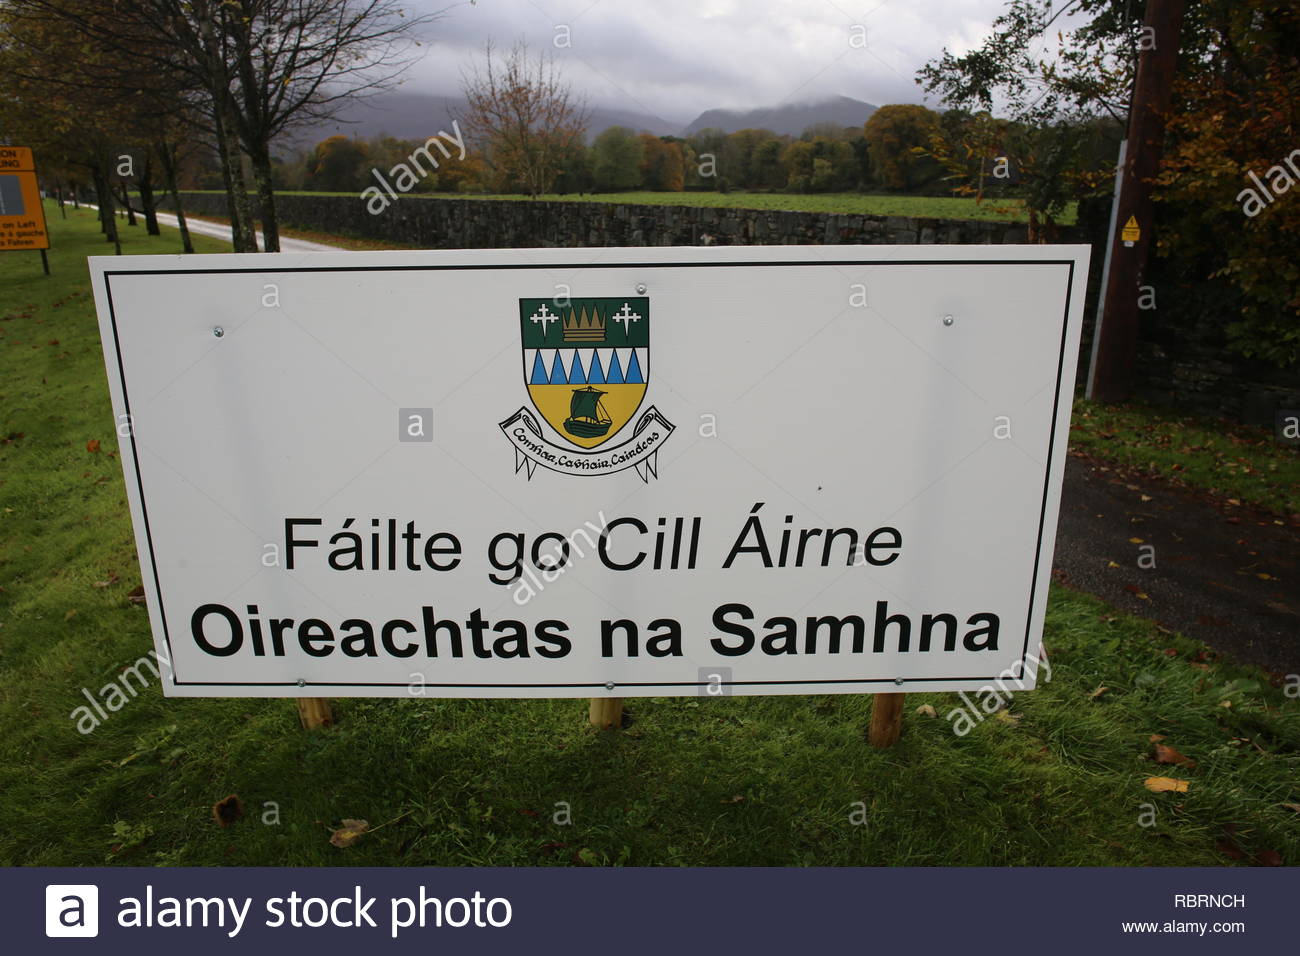 Ein Zeichen in Irisch und Englisch außerhalb von Killarney, County Kerry, Besucher auf eine irische Sprache Festival. Stockfoto